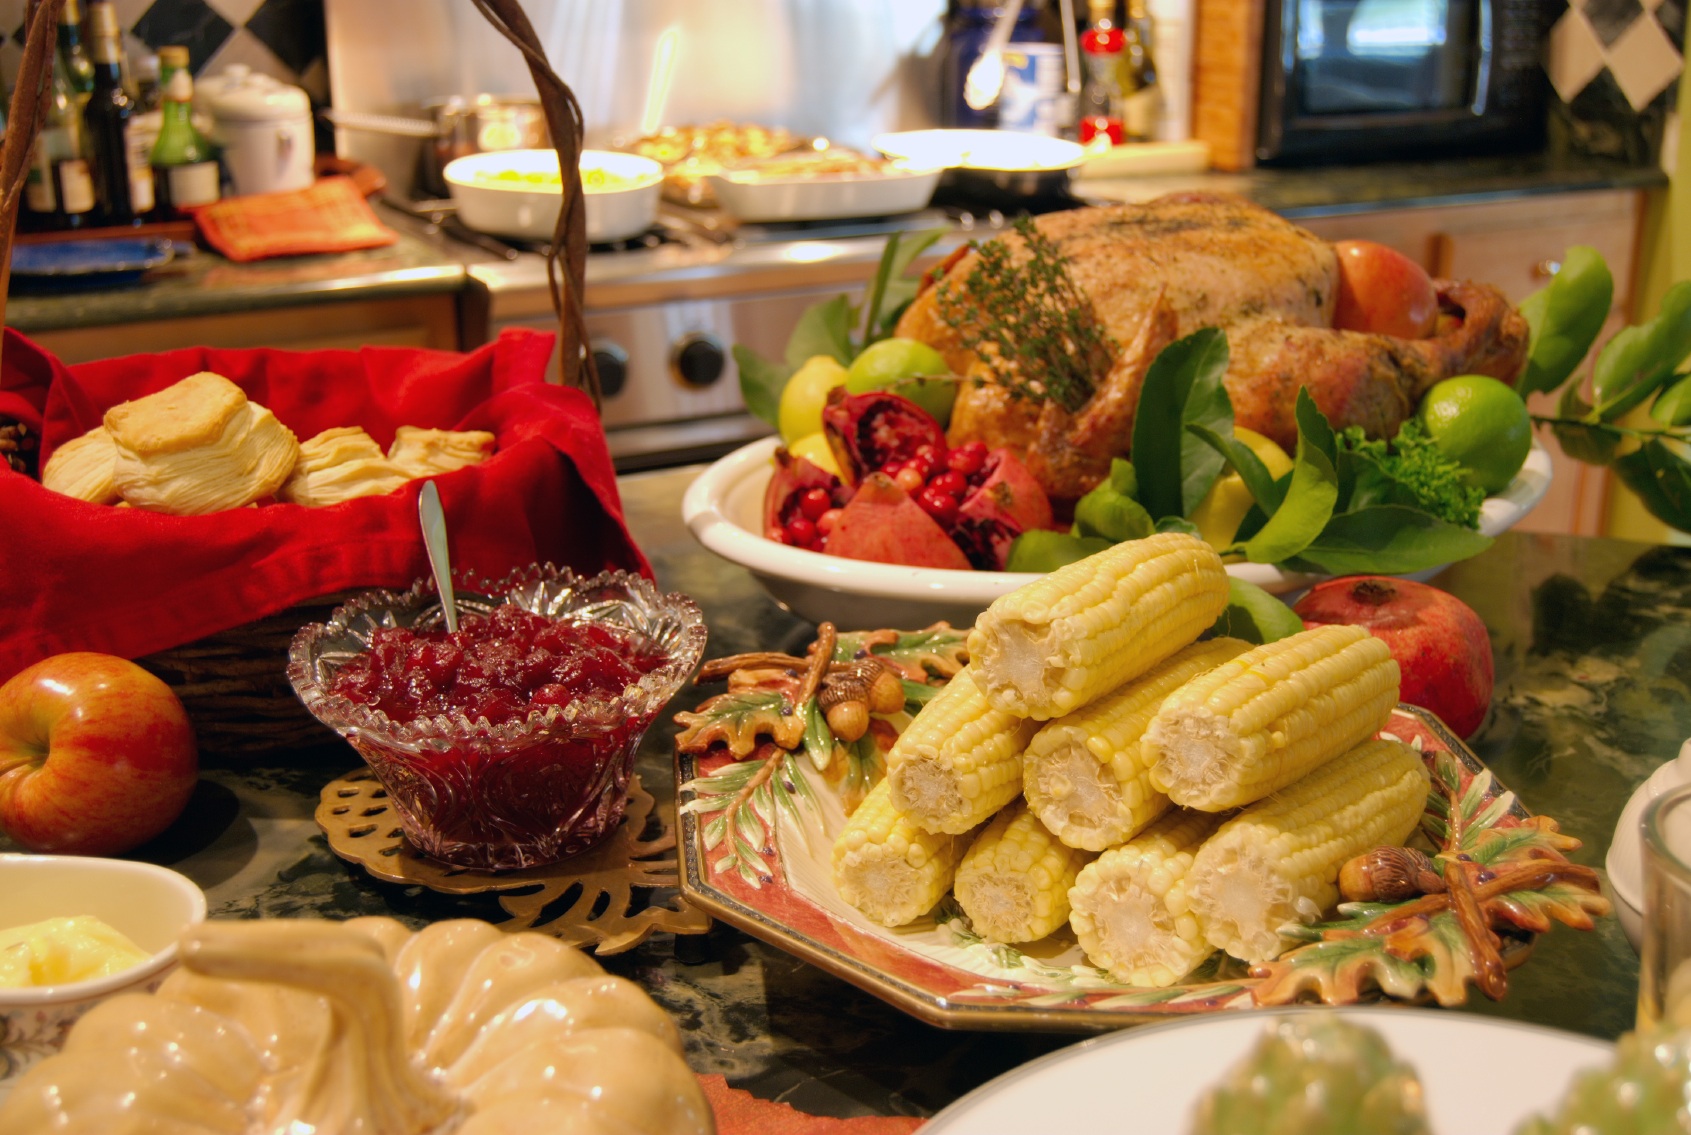 Праздничный стол на день Благодарения в США